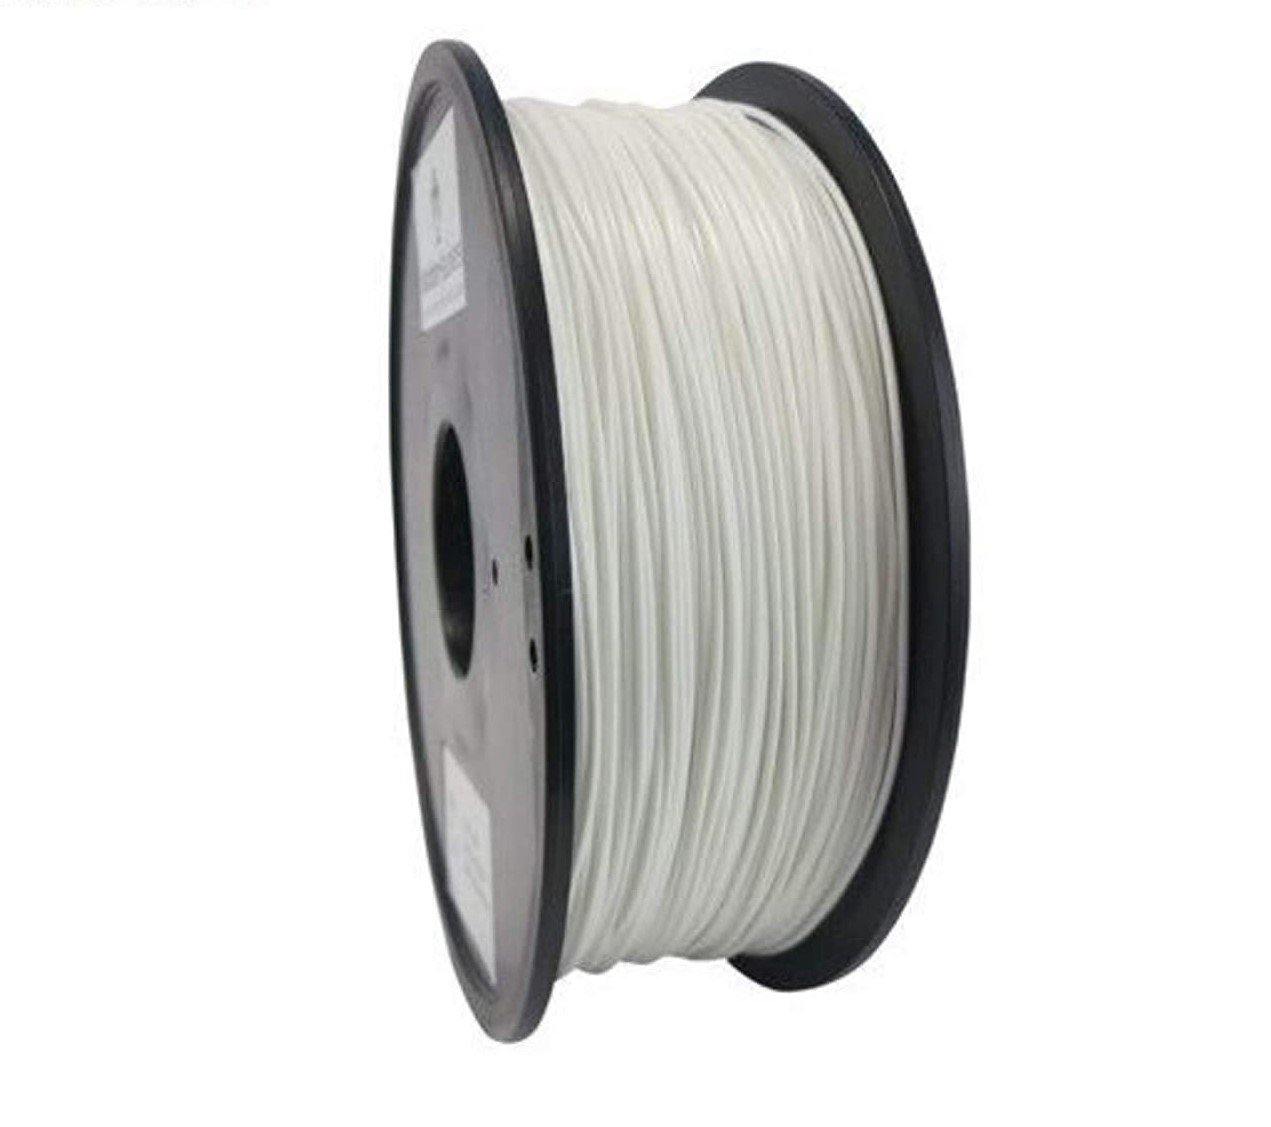 1.75mm White PLA Filament - 1Kg